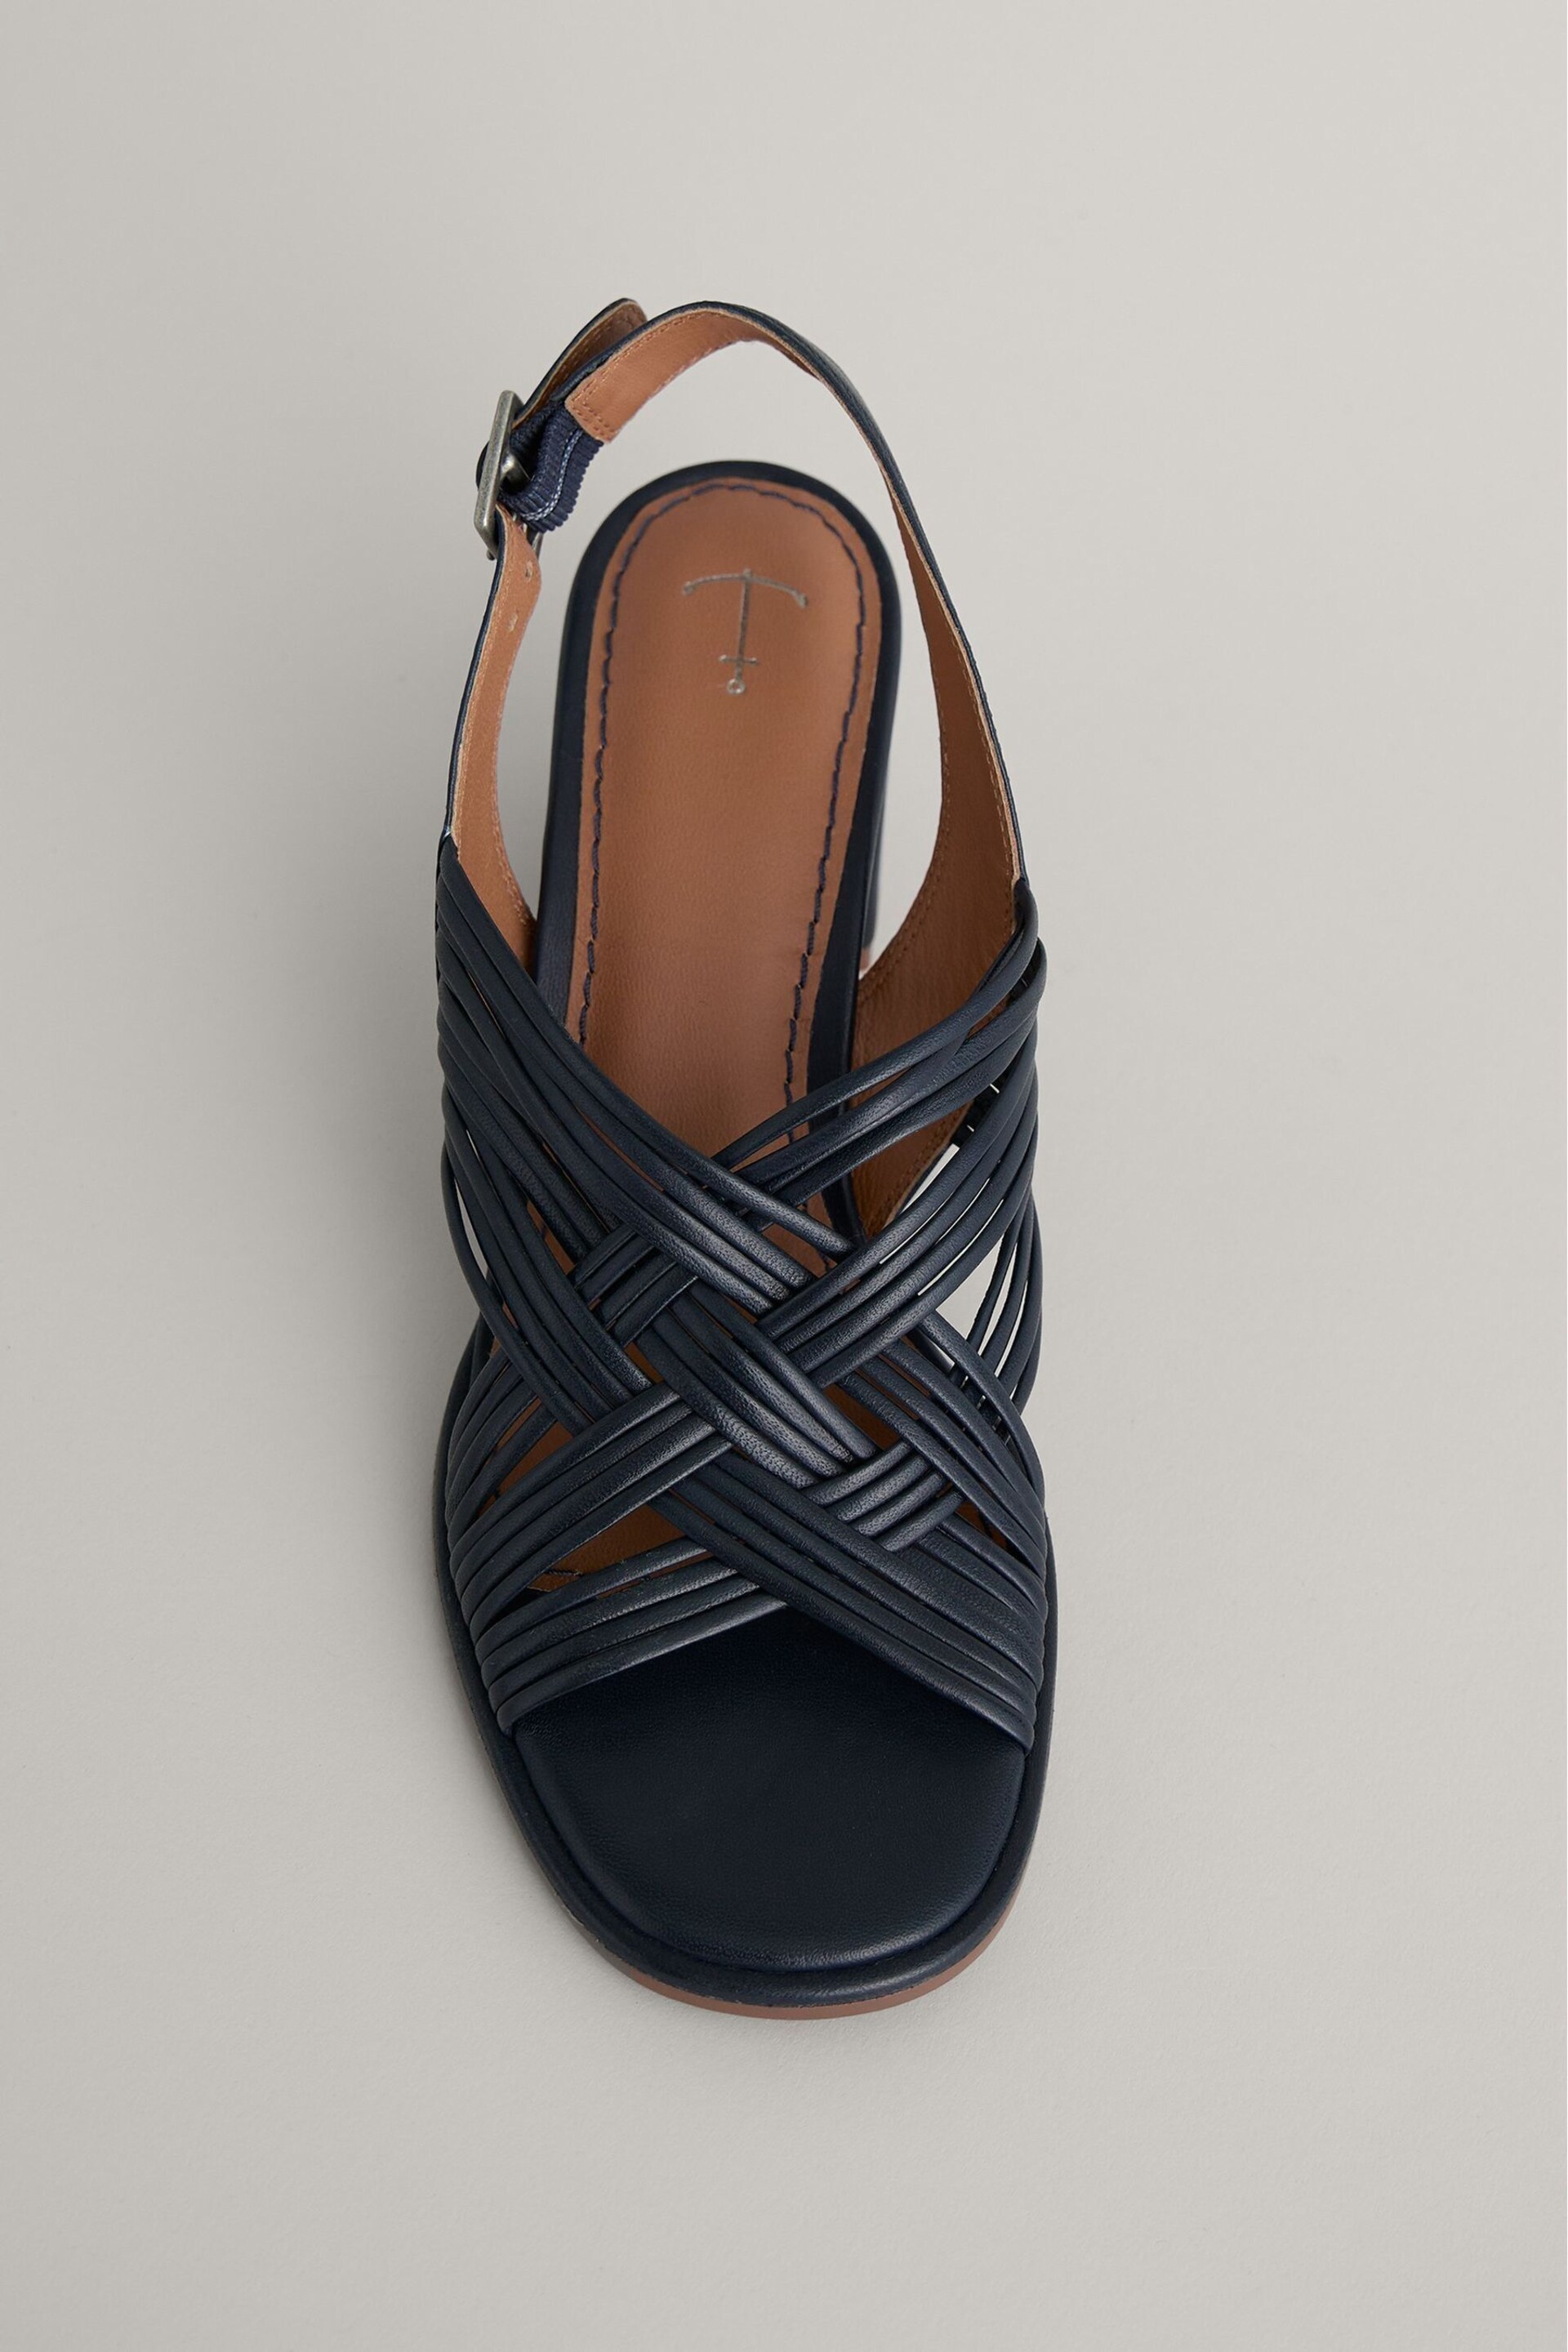 Seasalt Cornwall Blue Faerystone Mid Heel Leather Sandals - Image 3 of 5